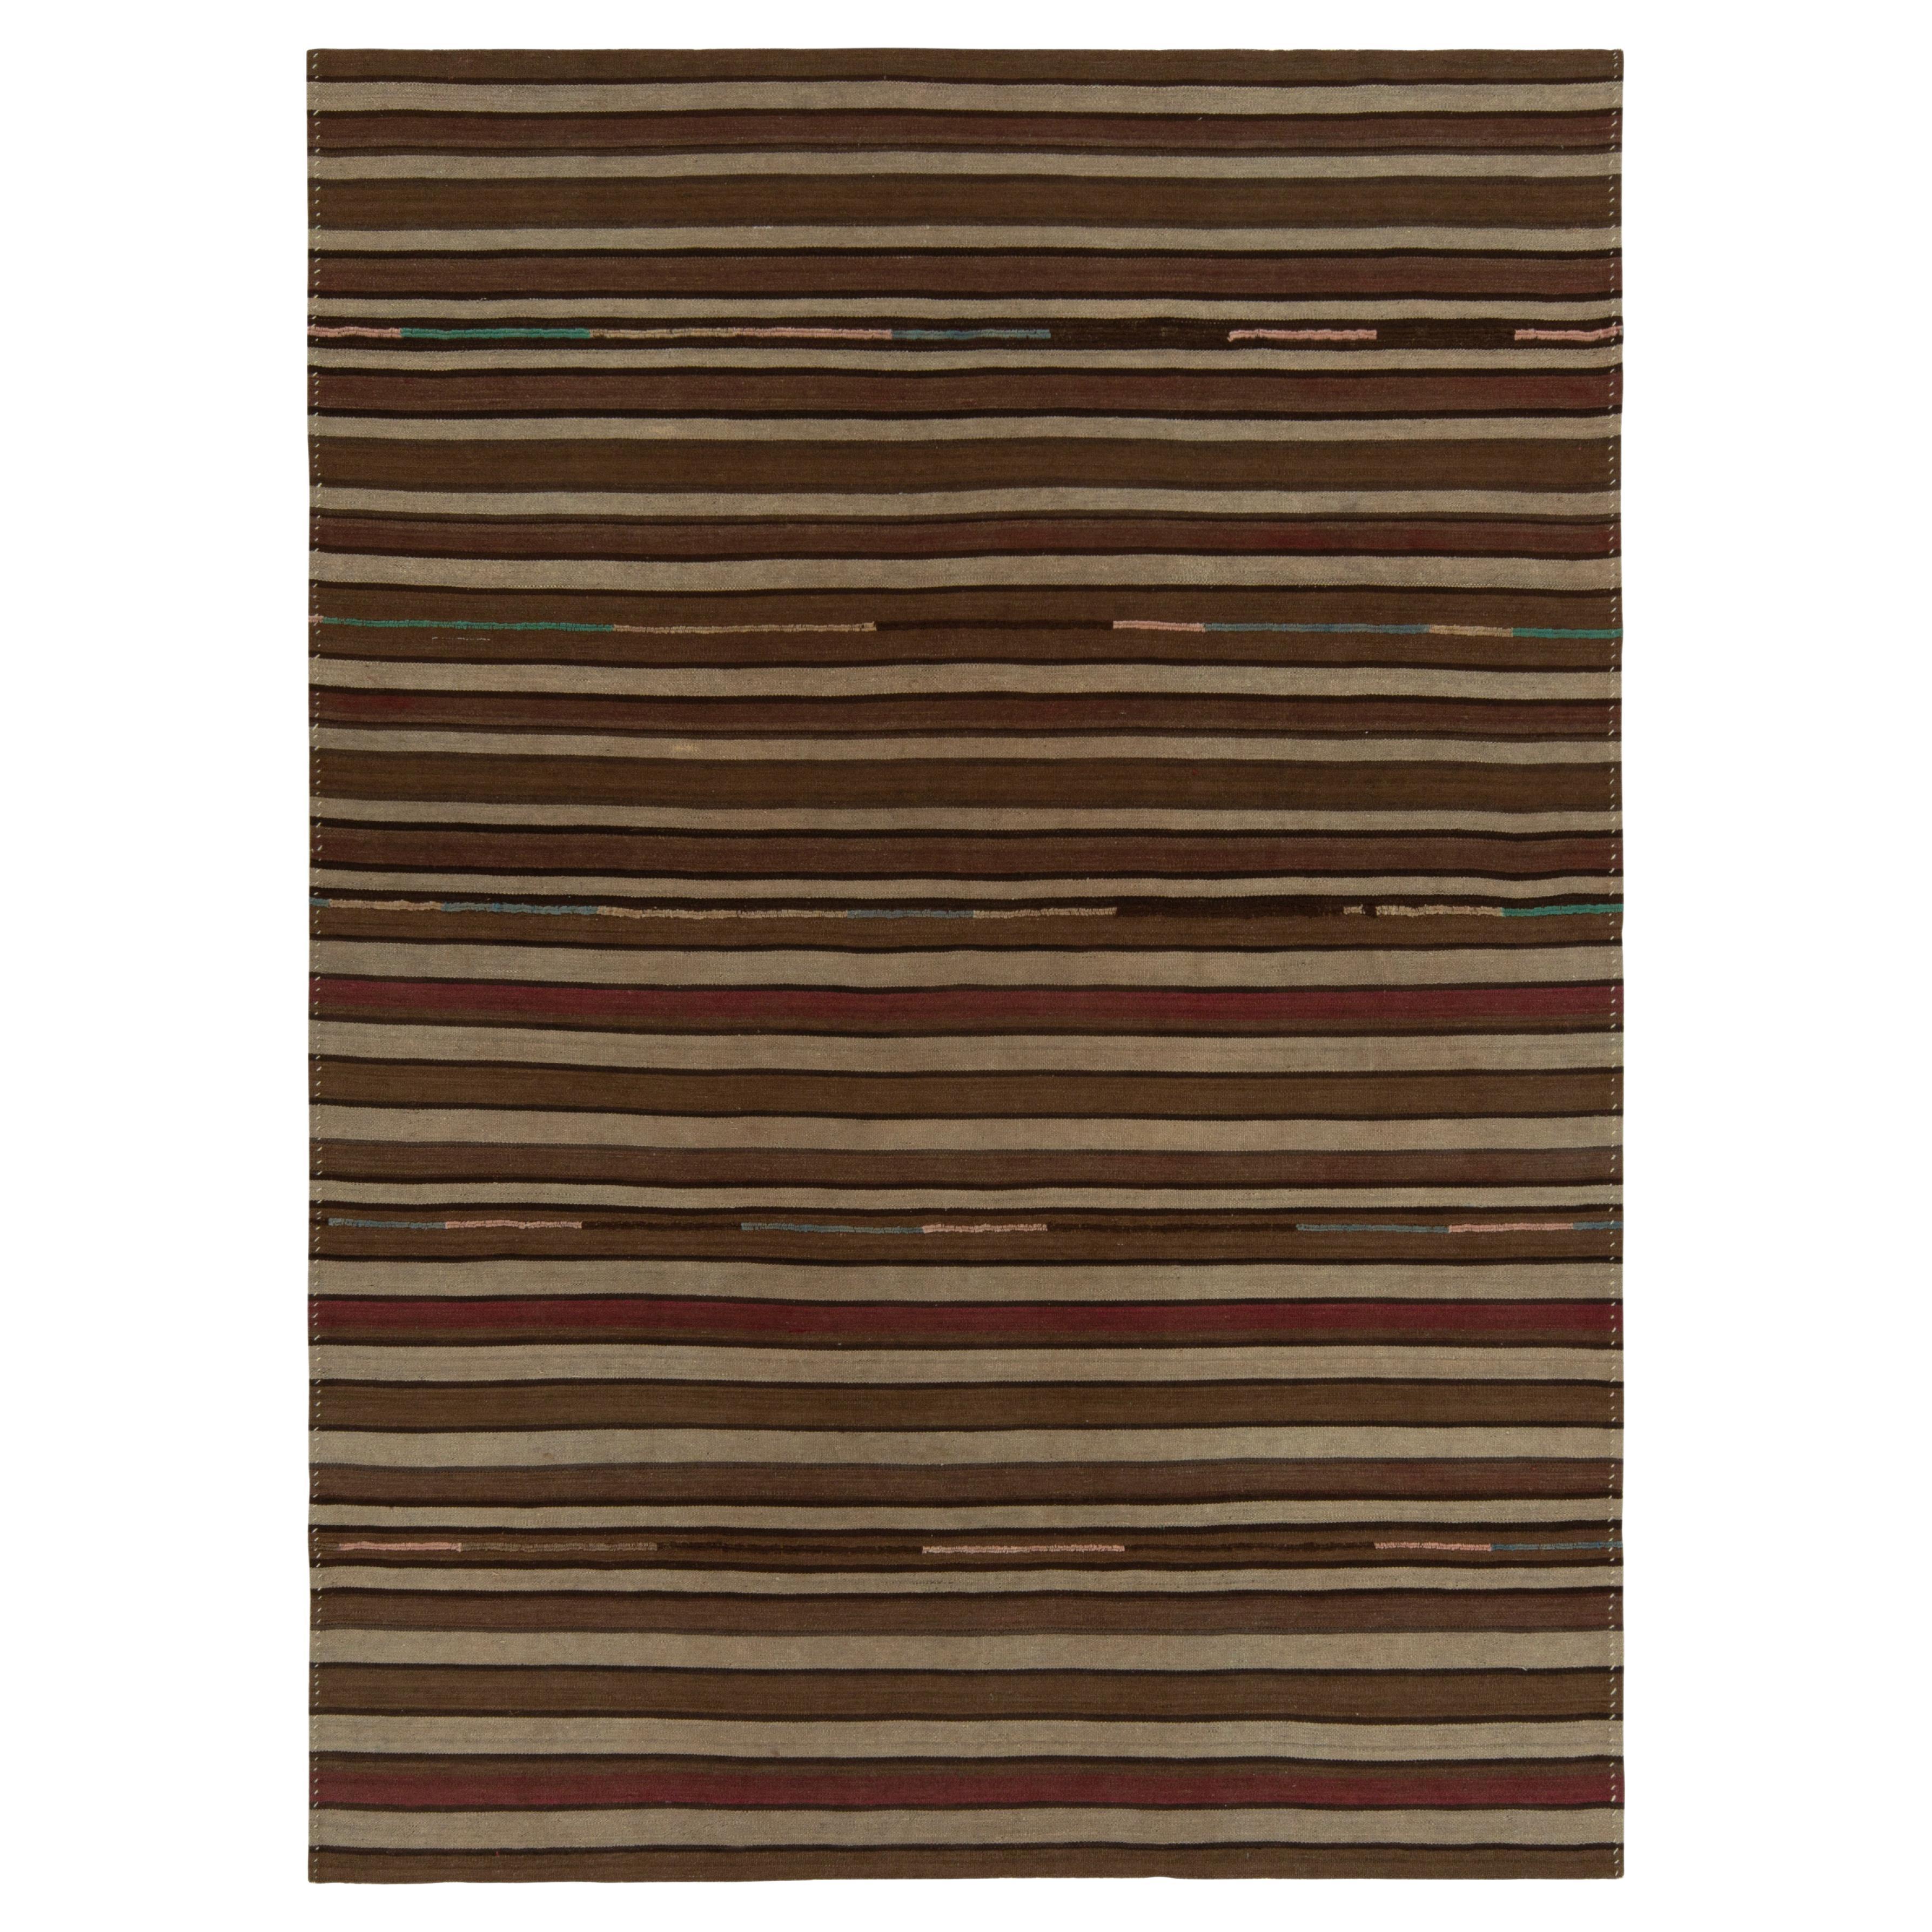 Antiker Kelim-Teppich aus den 1930er Jahren mit beige-braunen und roten Streifenmustern von Teppich & Kelim